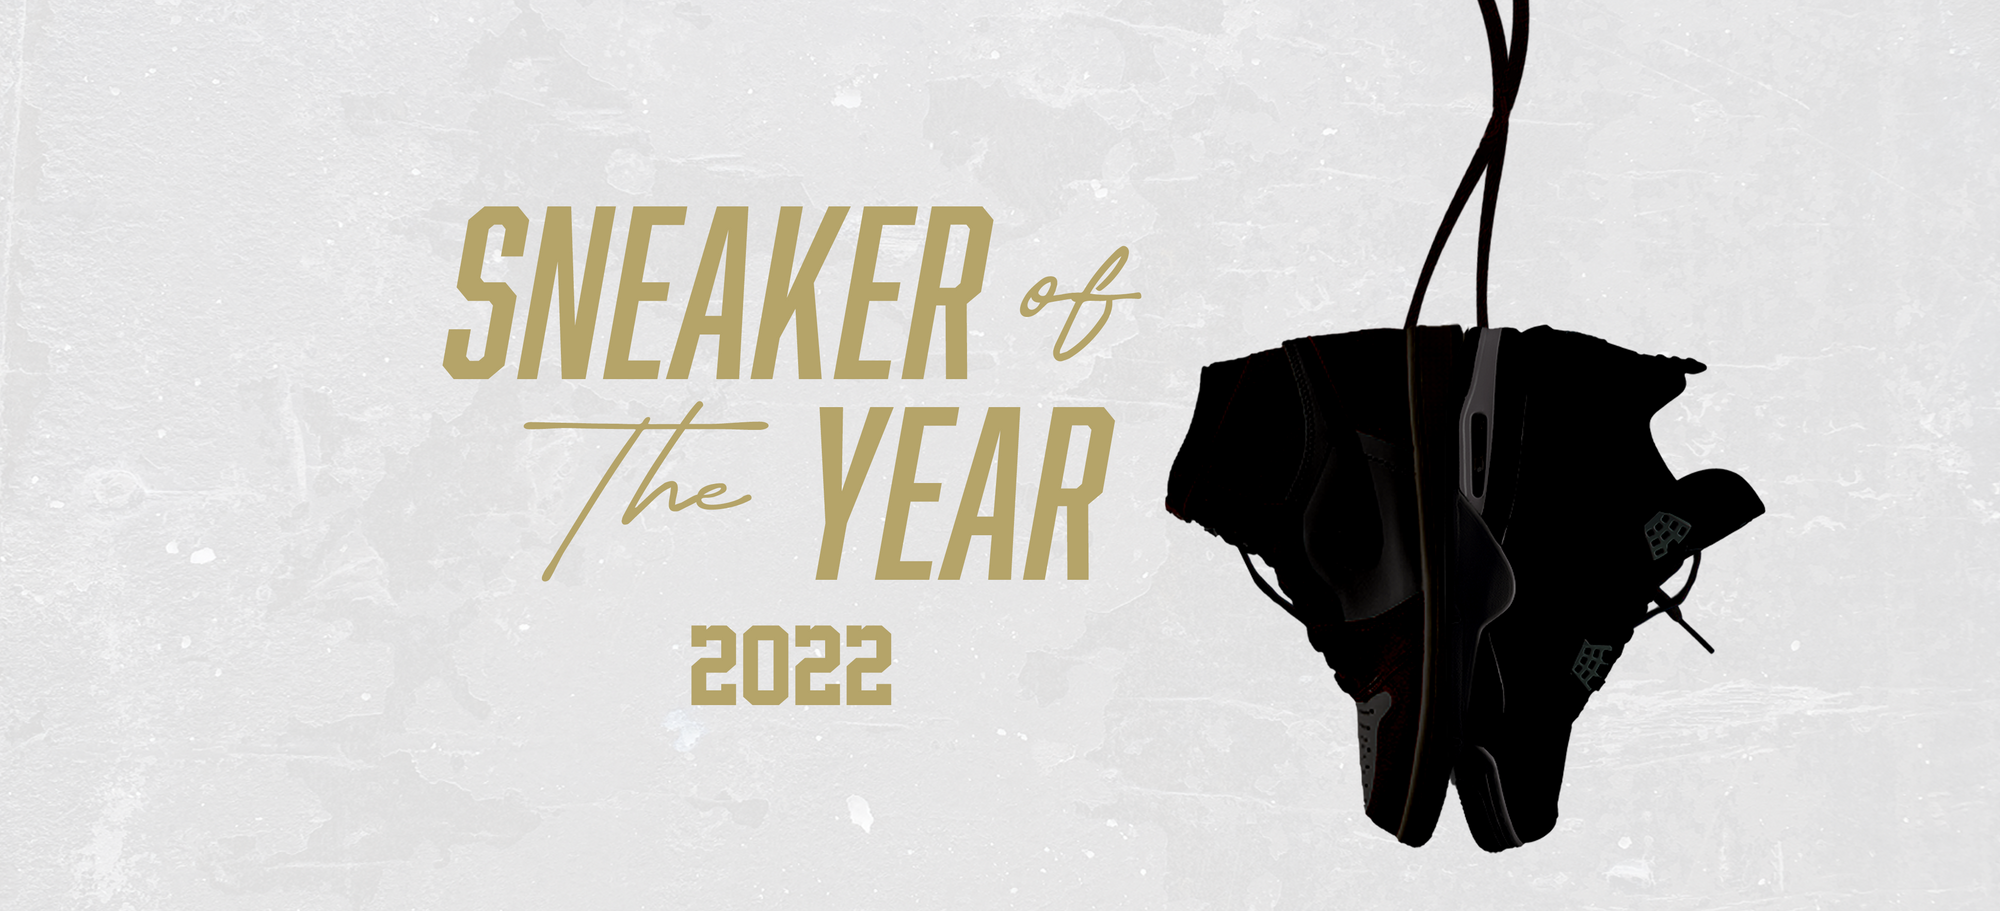 UrlfreezeShops’s Top 10 Sneakers of 2022